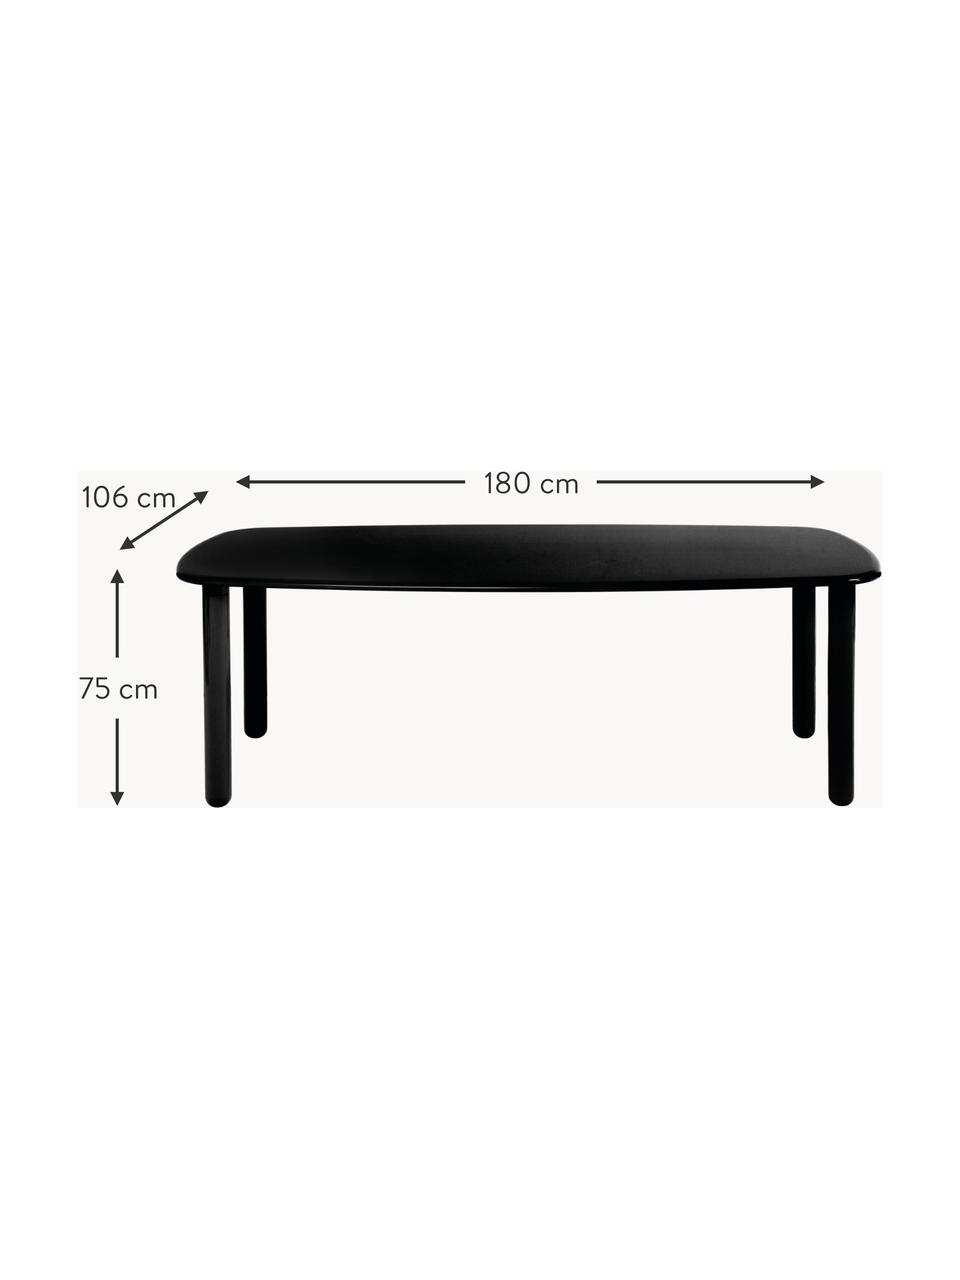 Dřevěný jídelní stůl Totton, různé velikosti, Lakovaná dřevovláknitá deska střední hustoty (MDF), Dřevo, černě lakované, Š 180 cm, H 106 cm